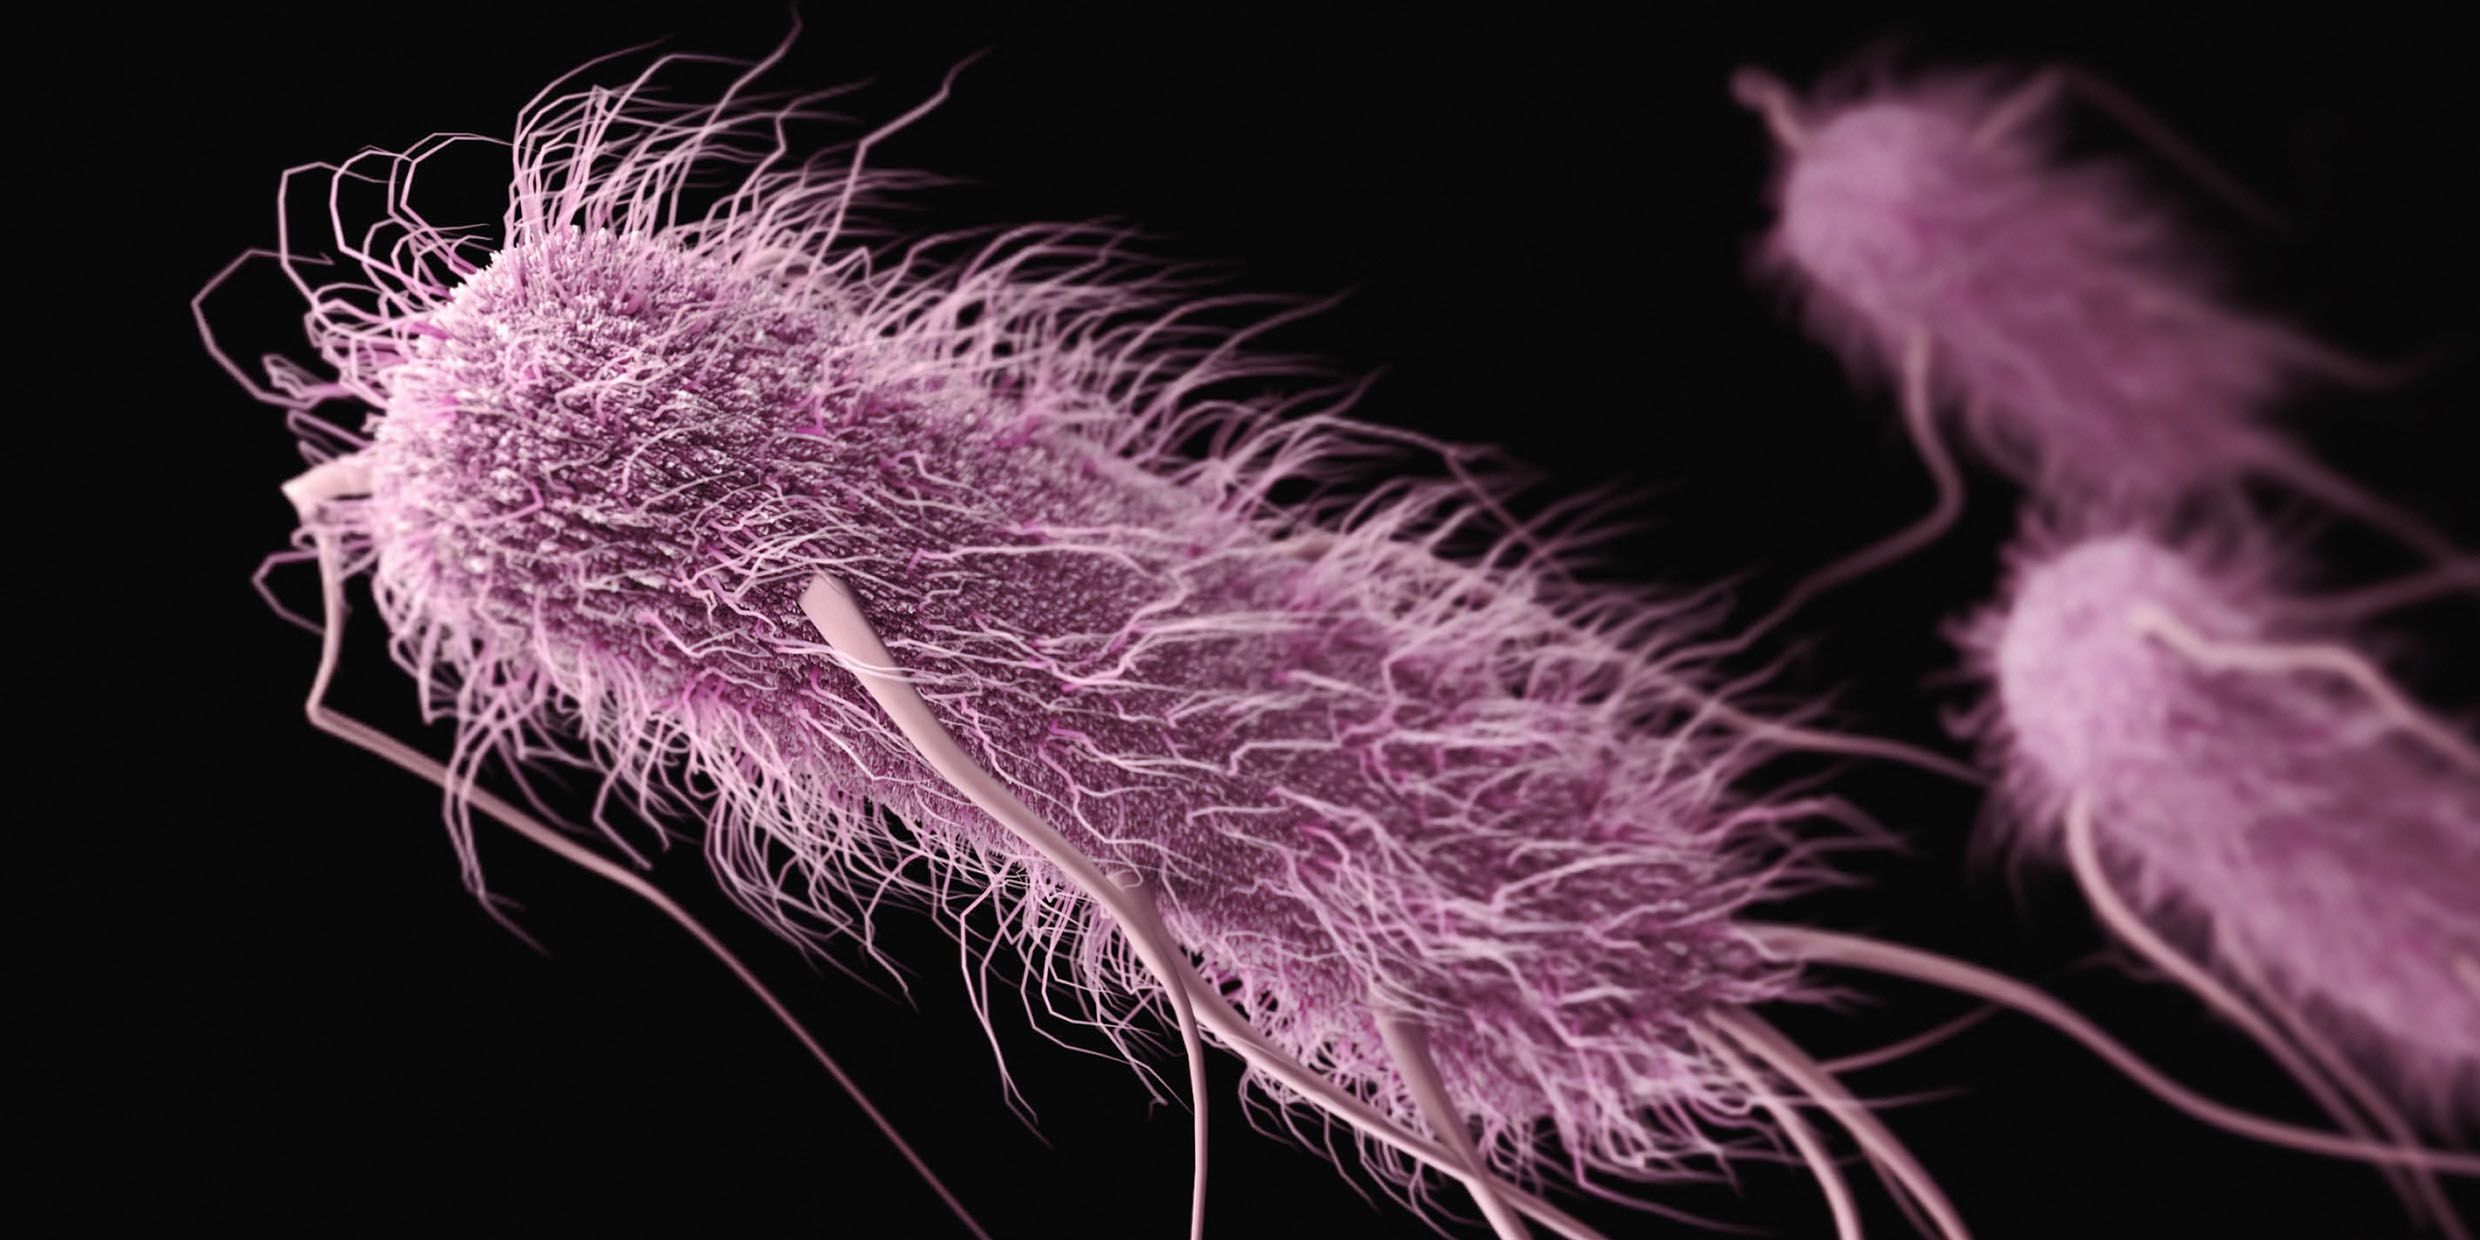 Computer rendering of bacterium